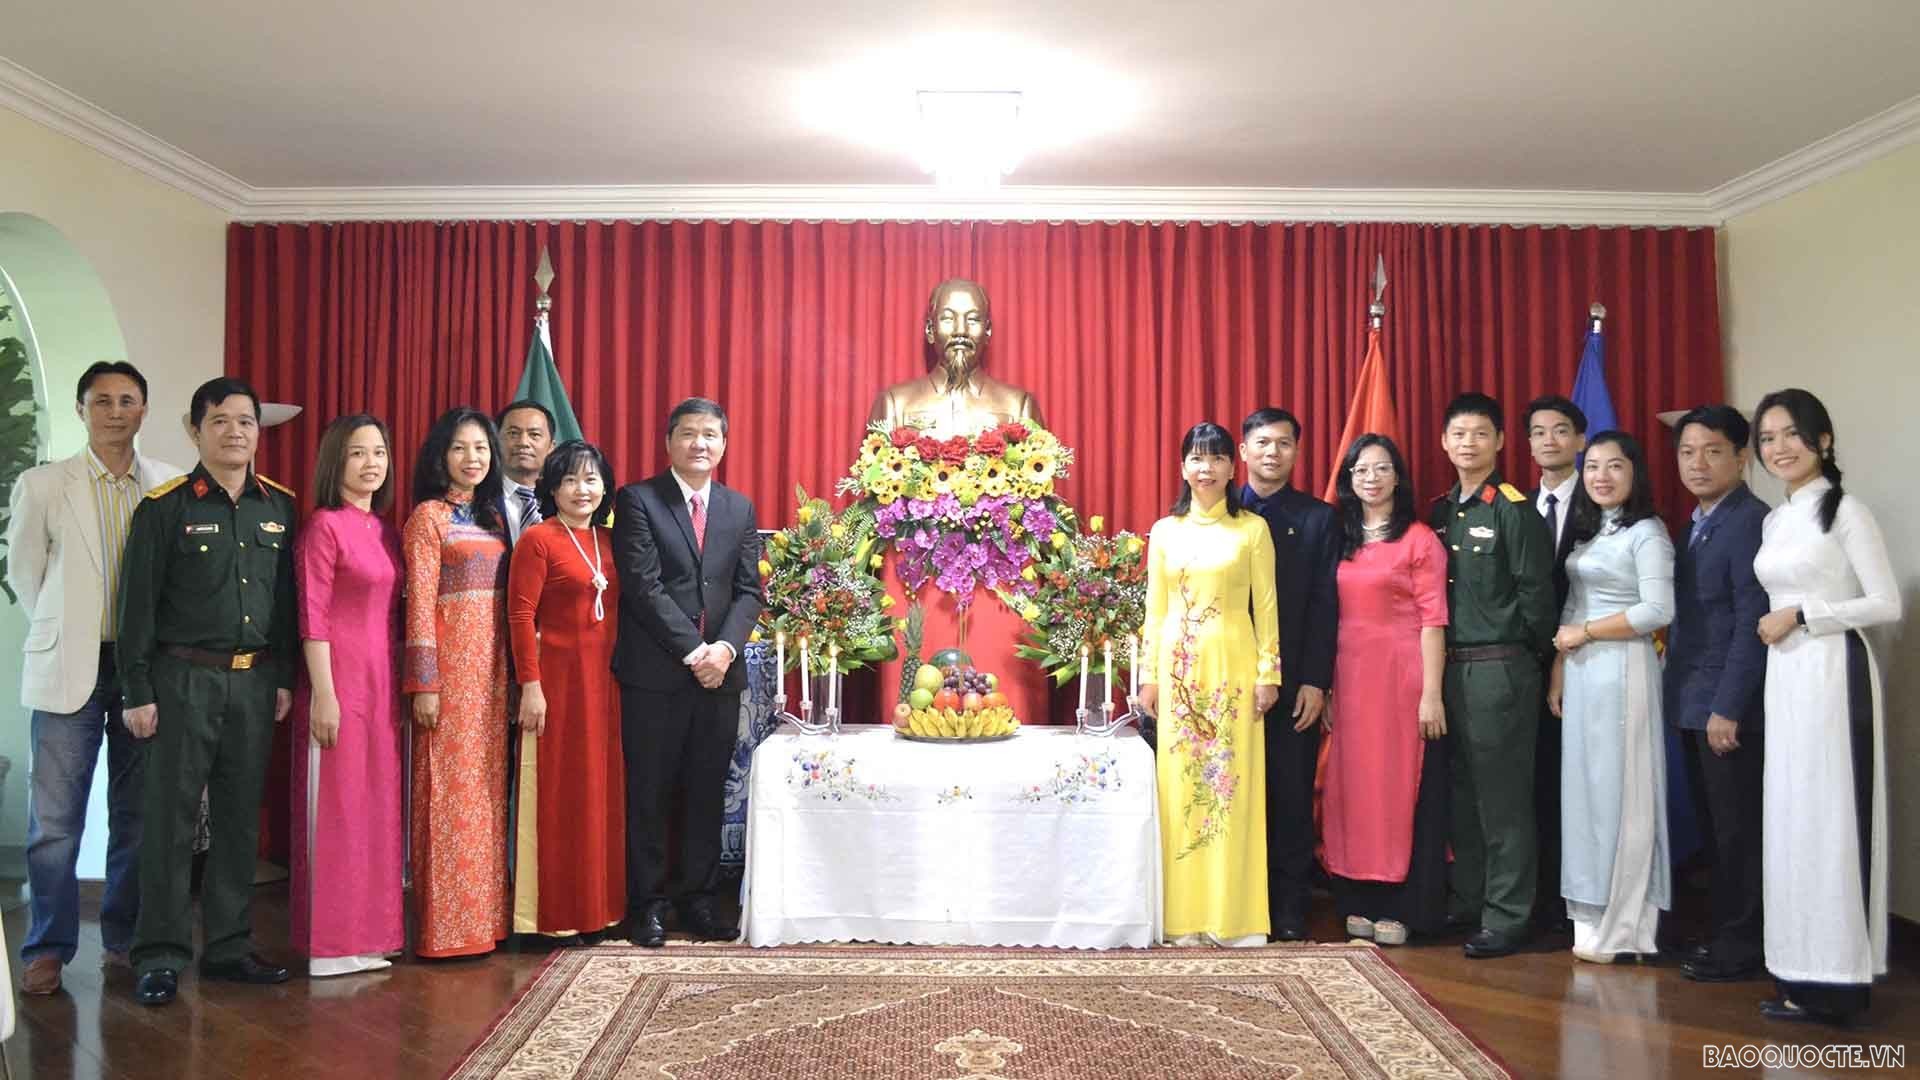 Đại sứ quán Việt Nam tại Brazil tổ chức lễ kỷ niệm 132 năm ngày sinh Chủ tịch Hồ Chí Minh